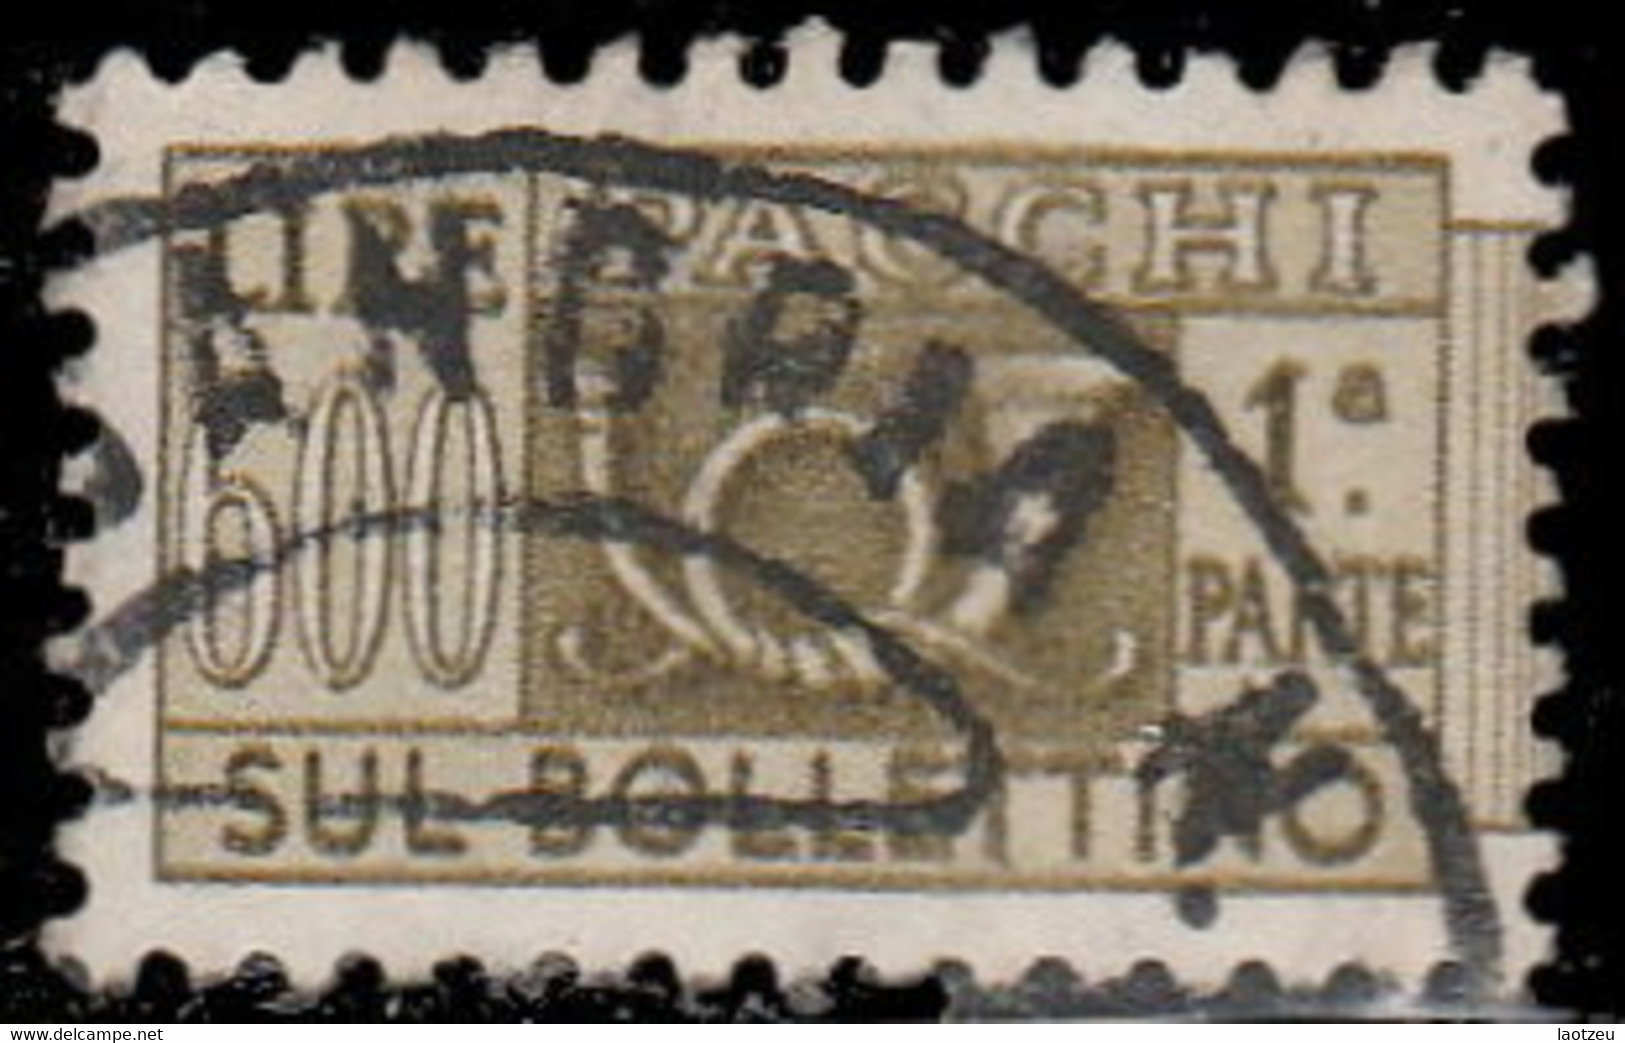 Italie Colis Postaux 1956. ~ CP 88 - 600 L. Cor De Chasse - Colis-postaux